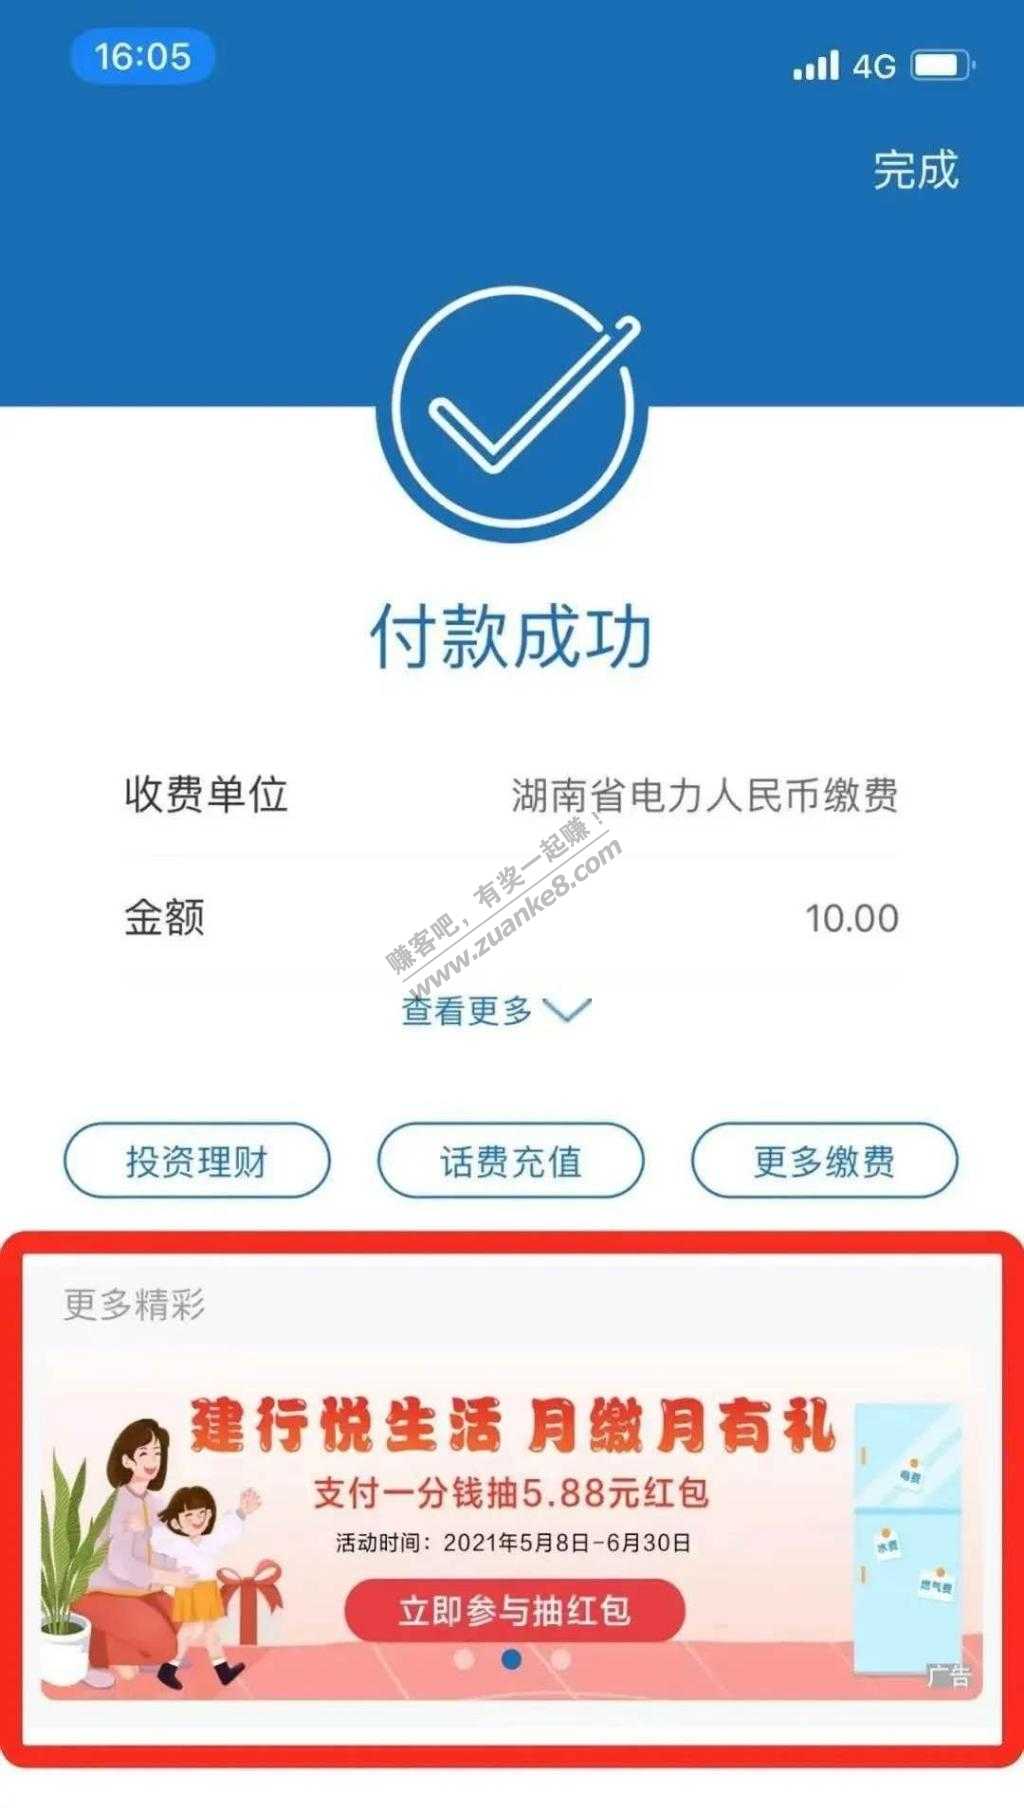 湖南建行app-缴费红包(最低5.88)-惠小助(52huixz.com)